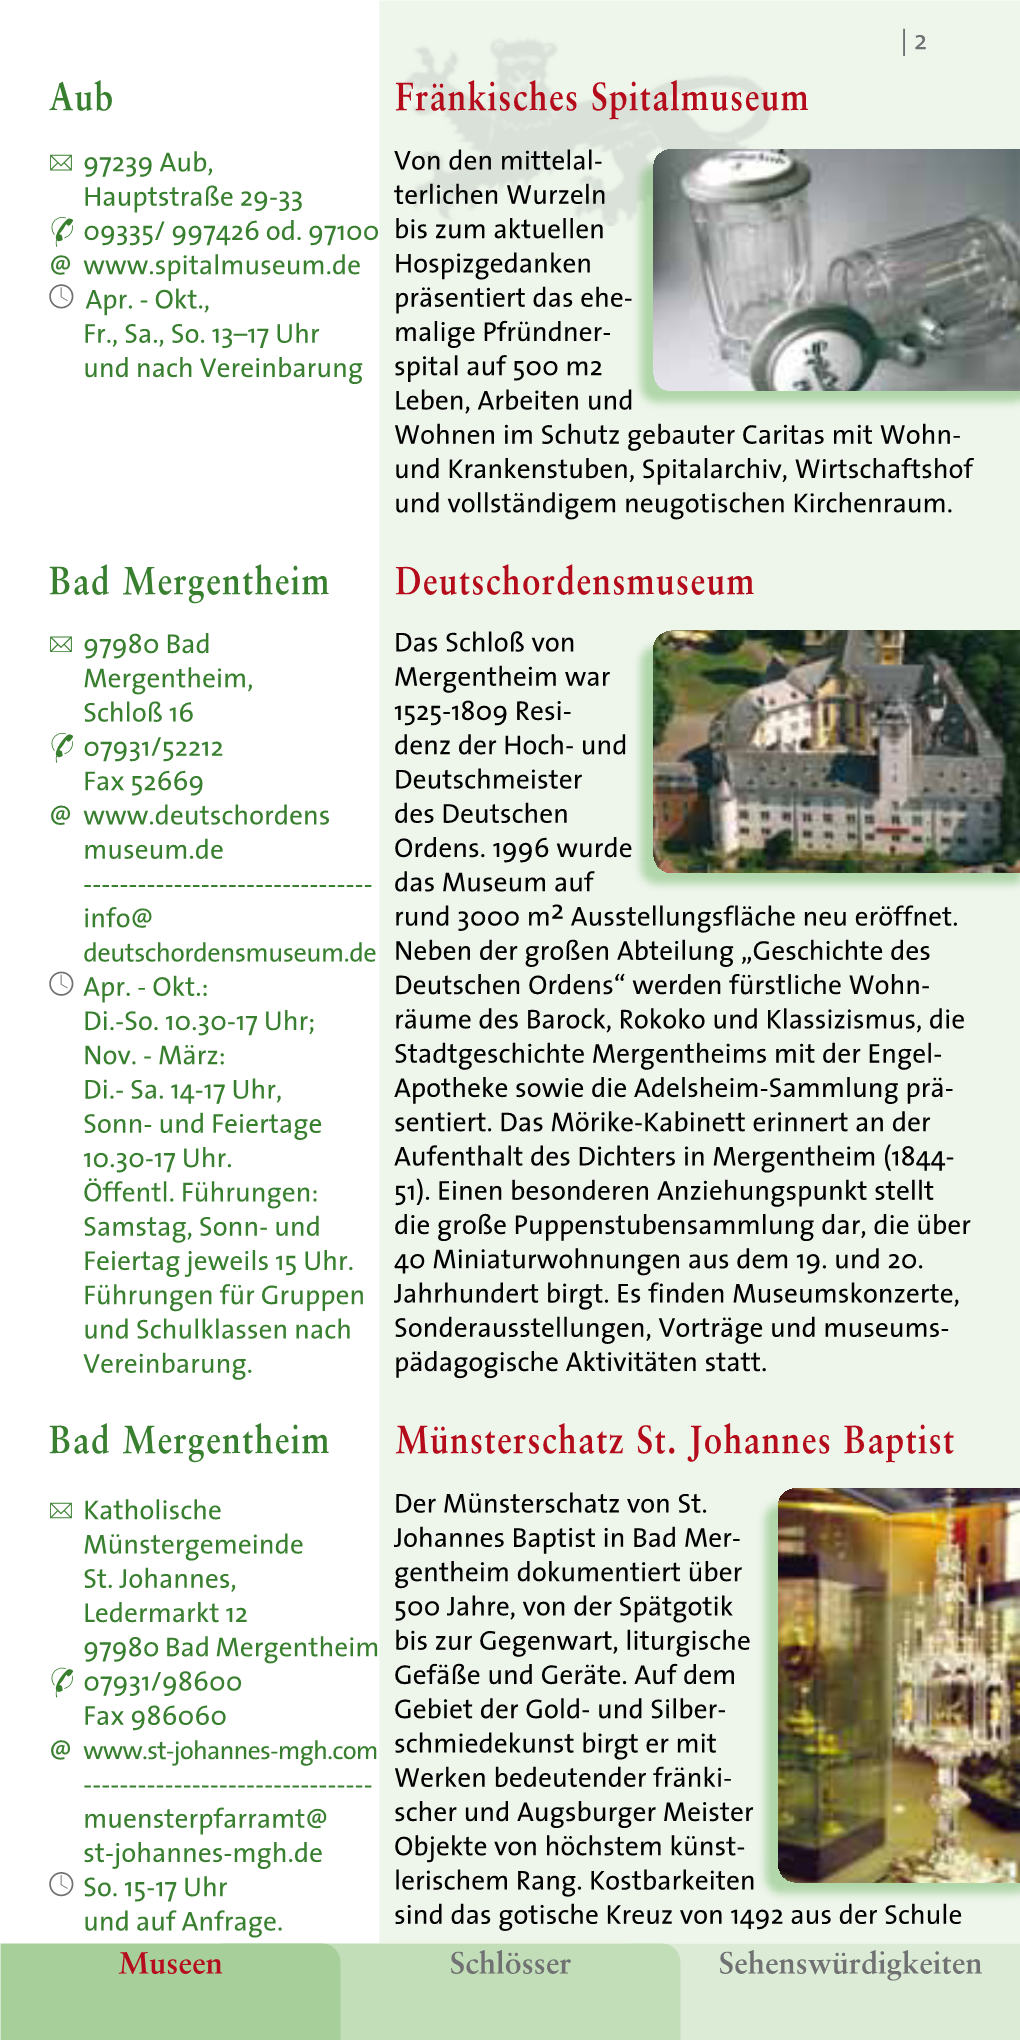 Bad Mergentheim Deutschordensmuseum Aub